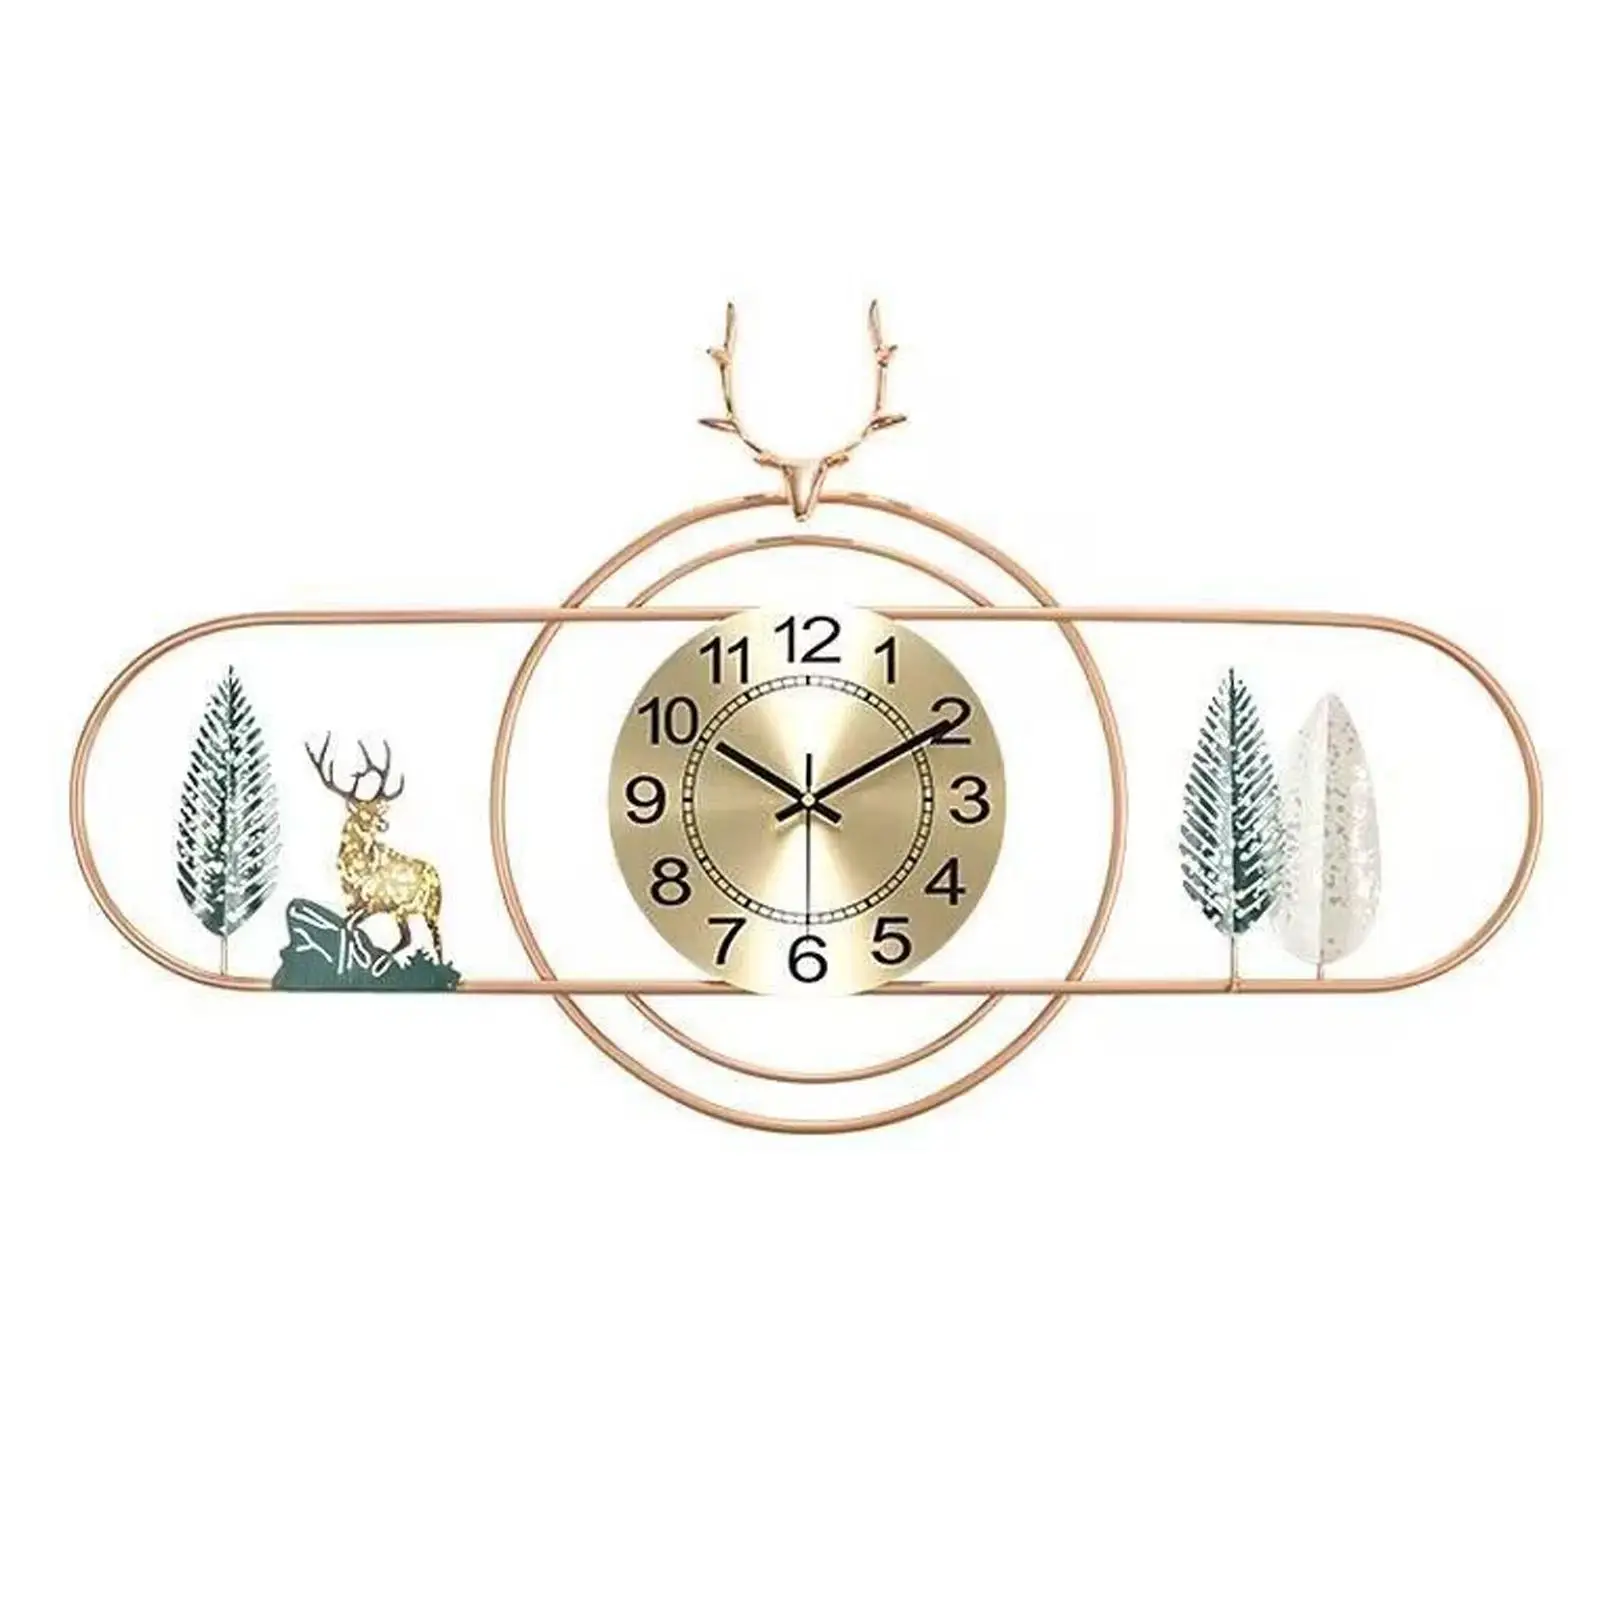 Часы в интерьере: настенные часы большого и маленького диаметра как предмет интерьера